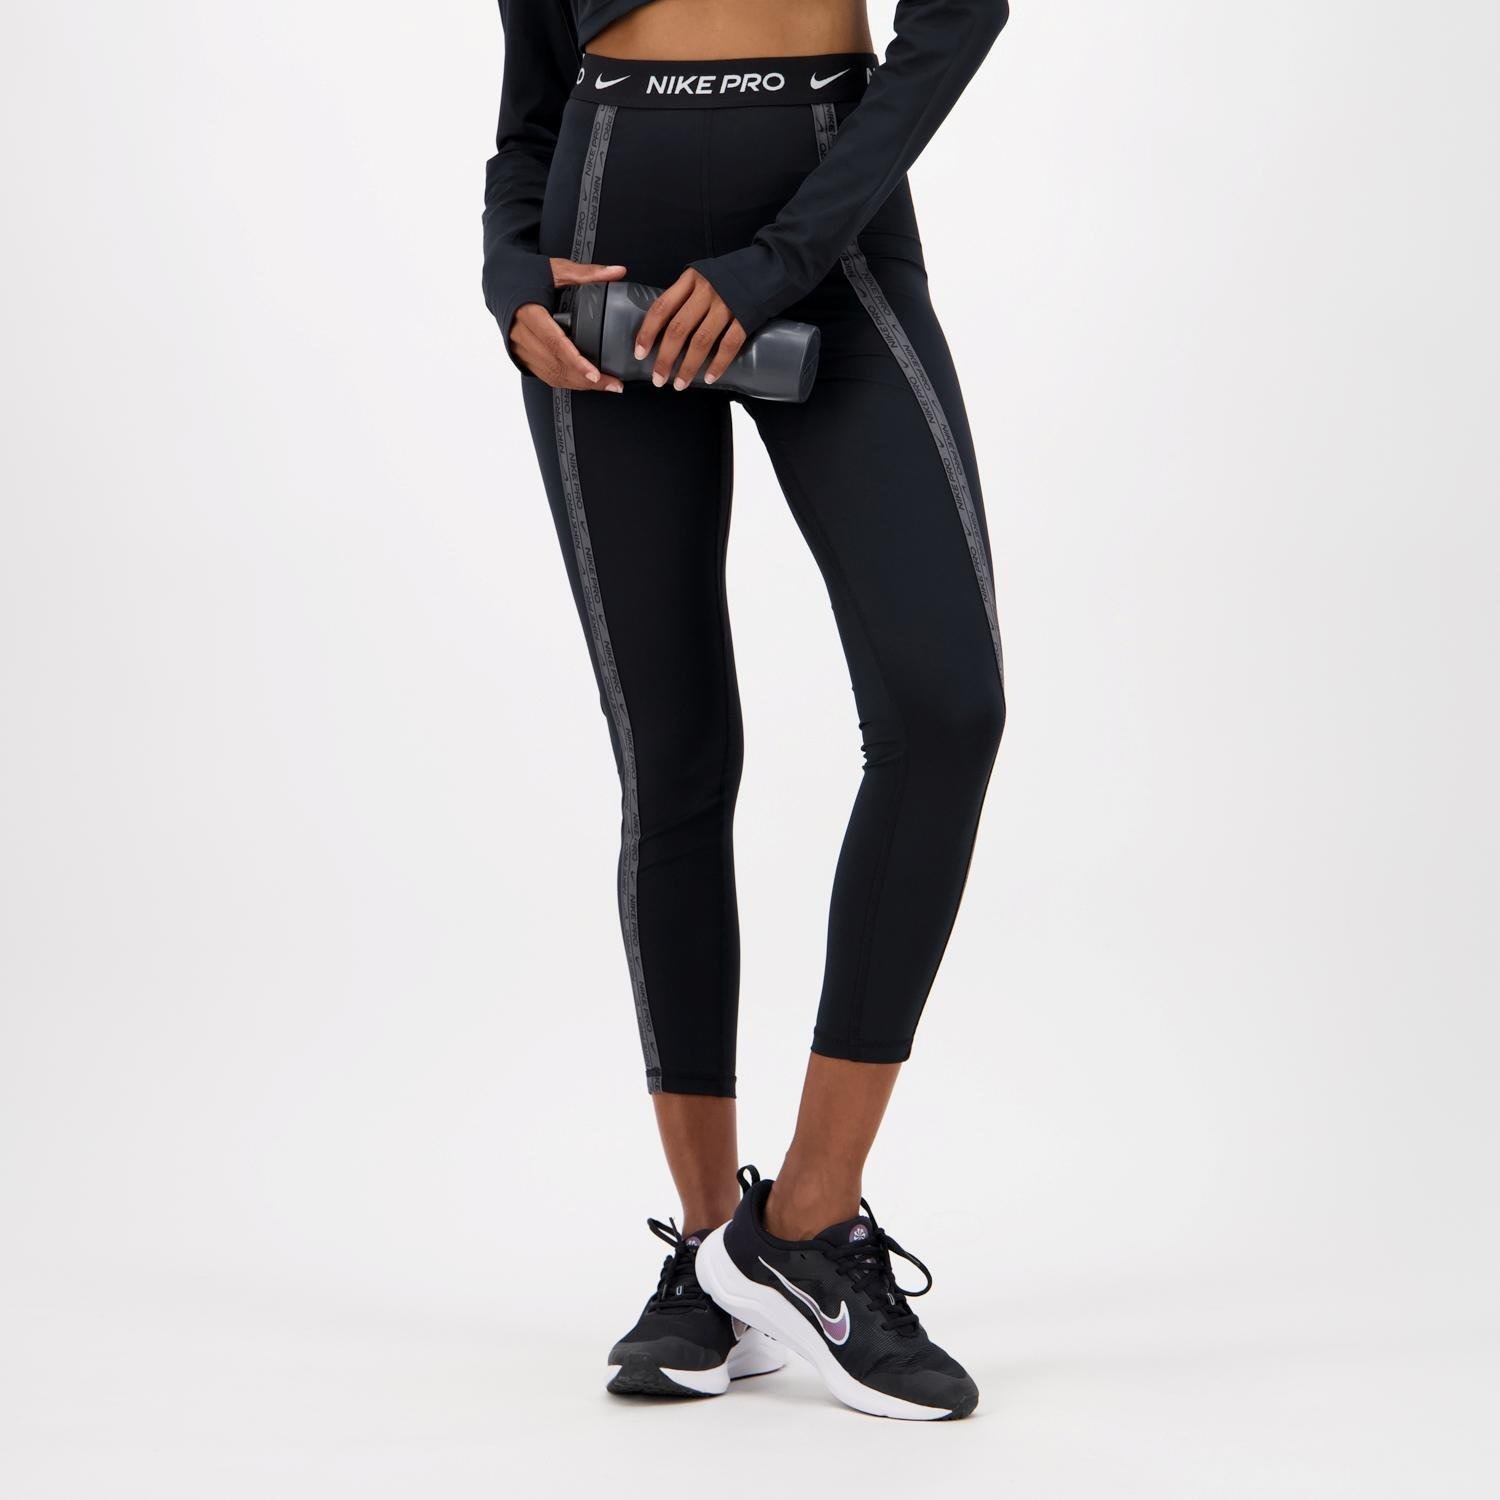 Nike Nike pro sporttight zwart dames dames